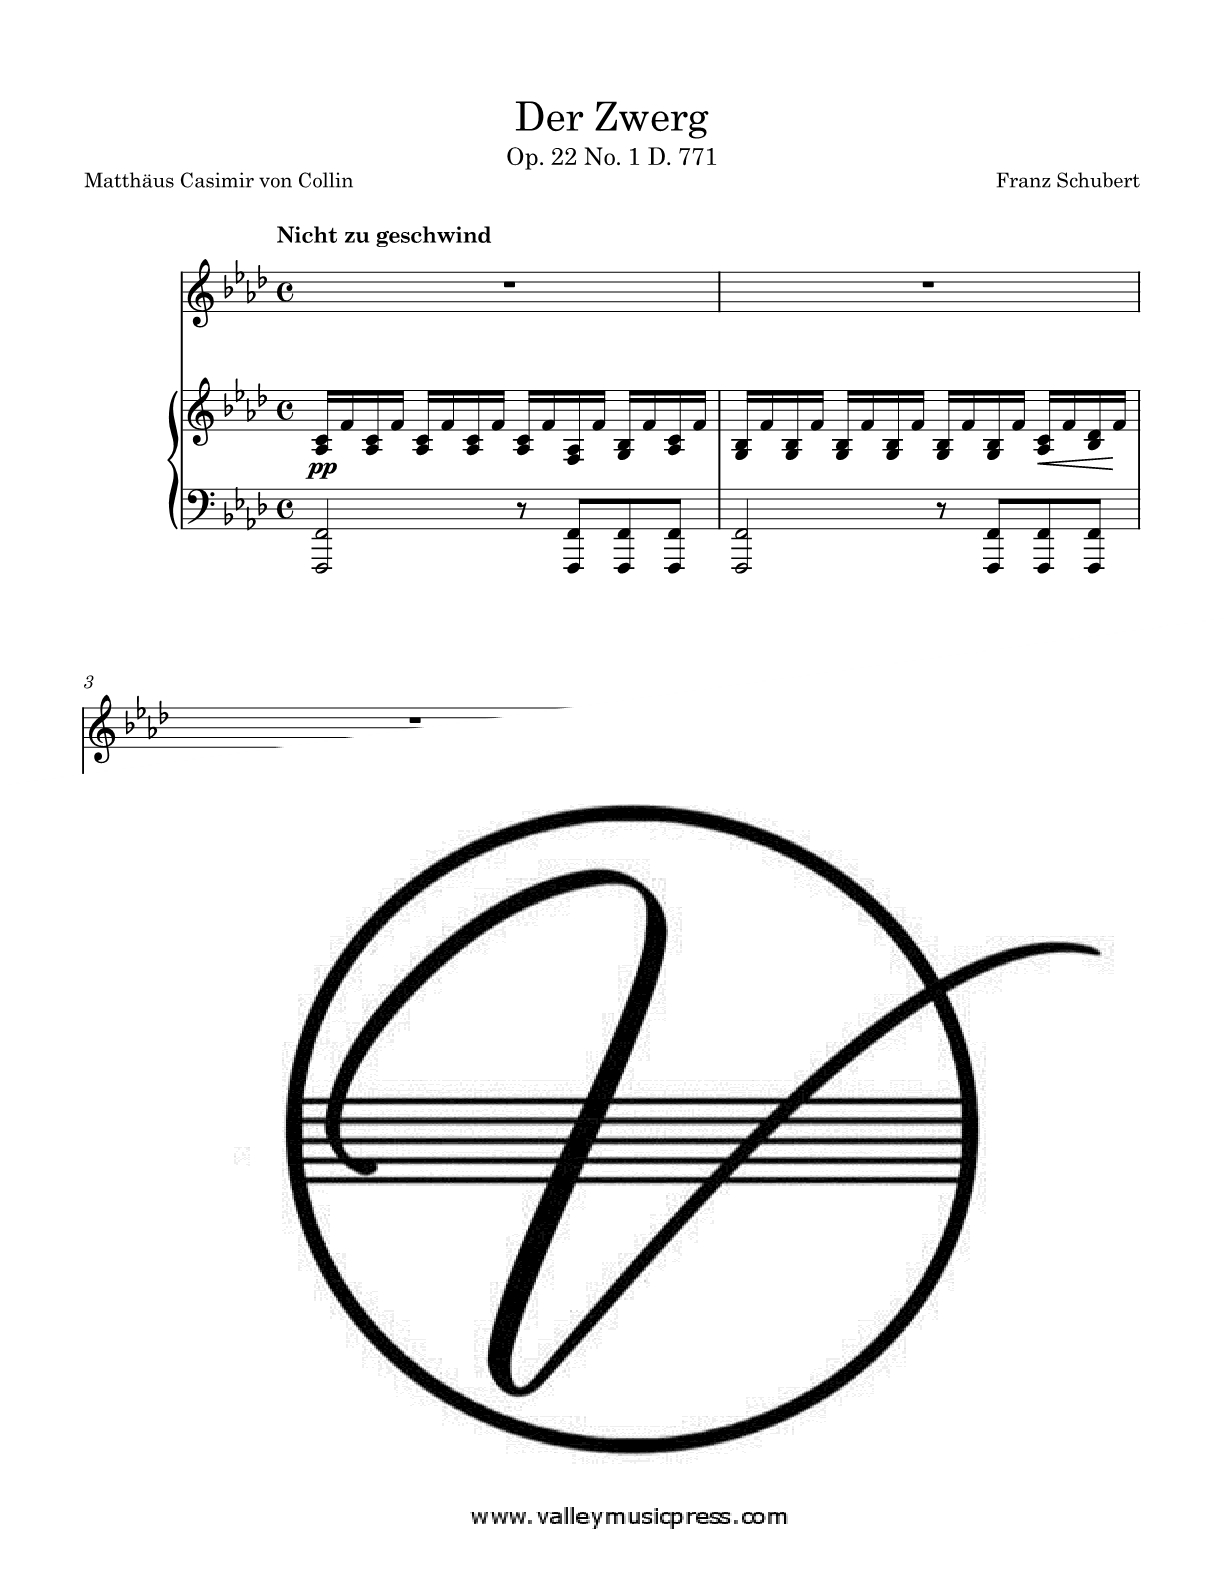 Schubert - Der Zwerg D. 771 Op. 22 No. 1 (Voice) - Click Image to Close